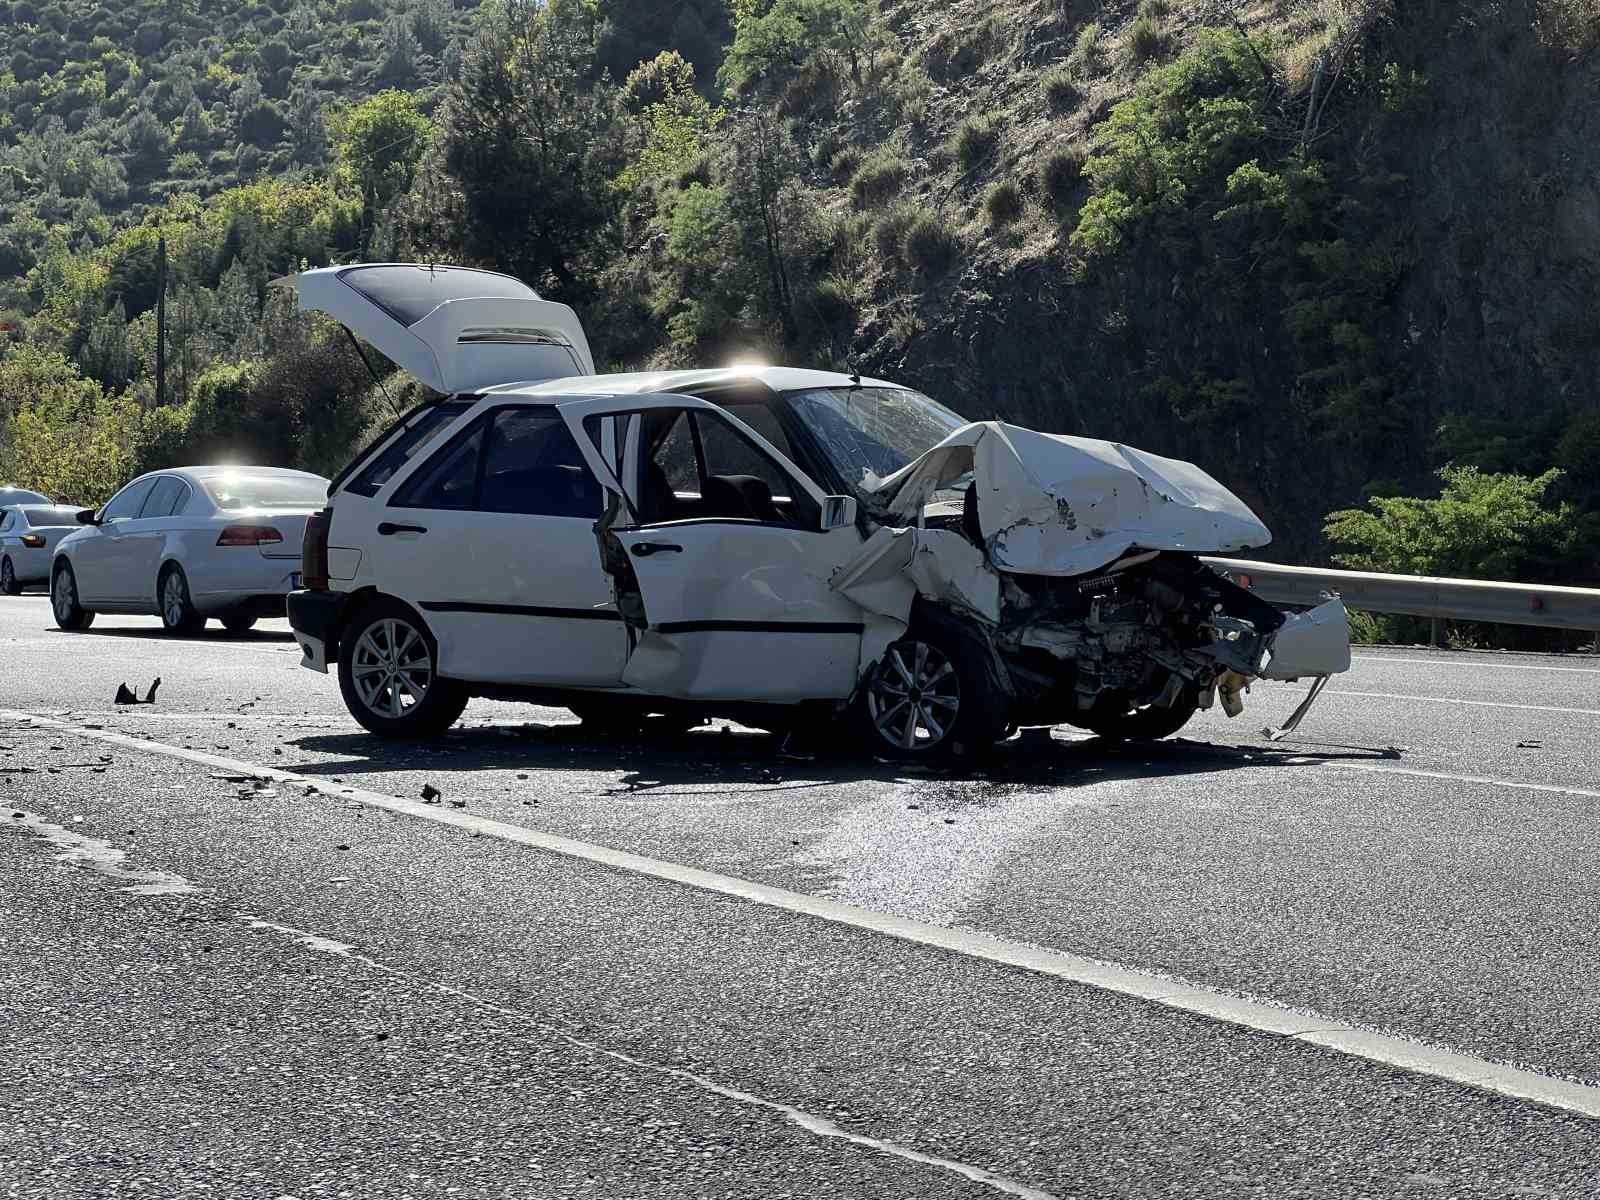 Manisa’da trafik kazası: 3 yaralı
